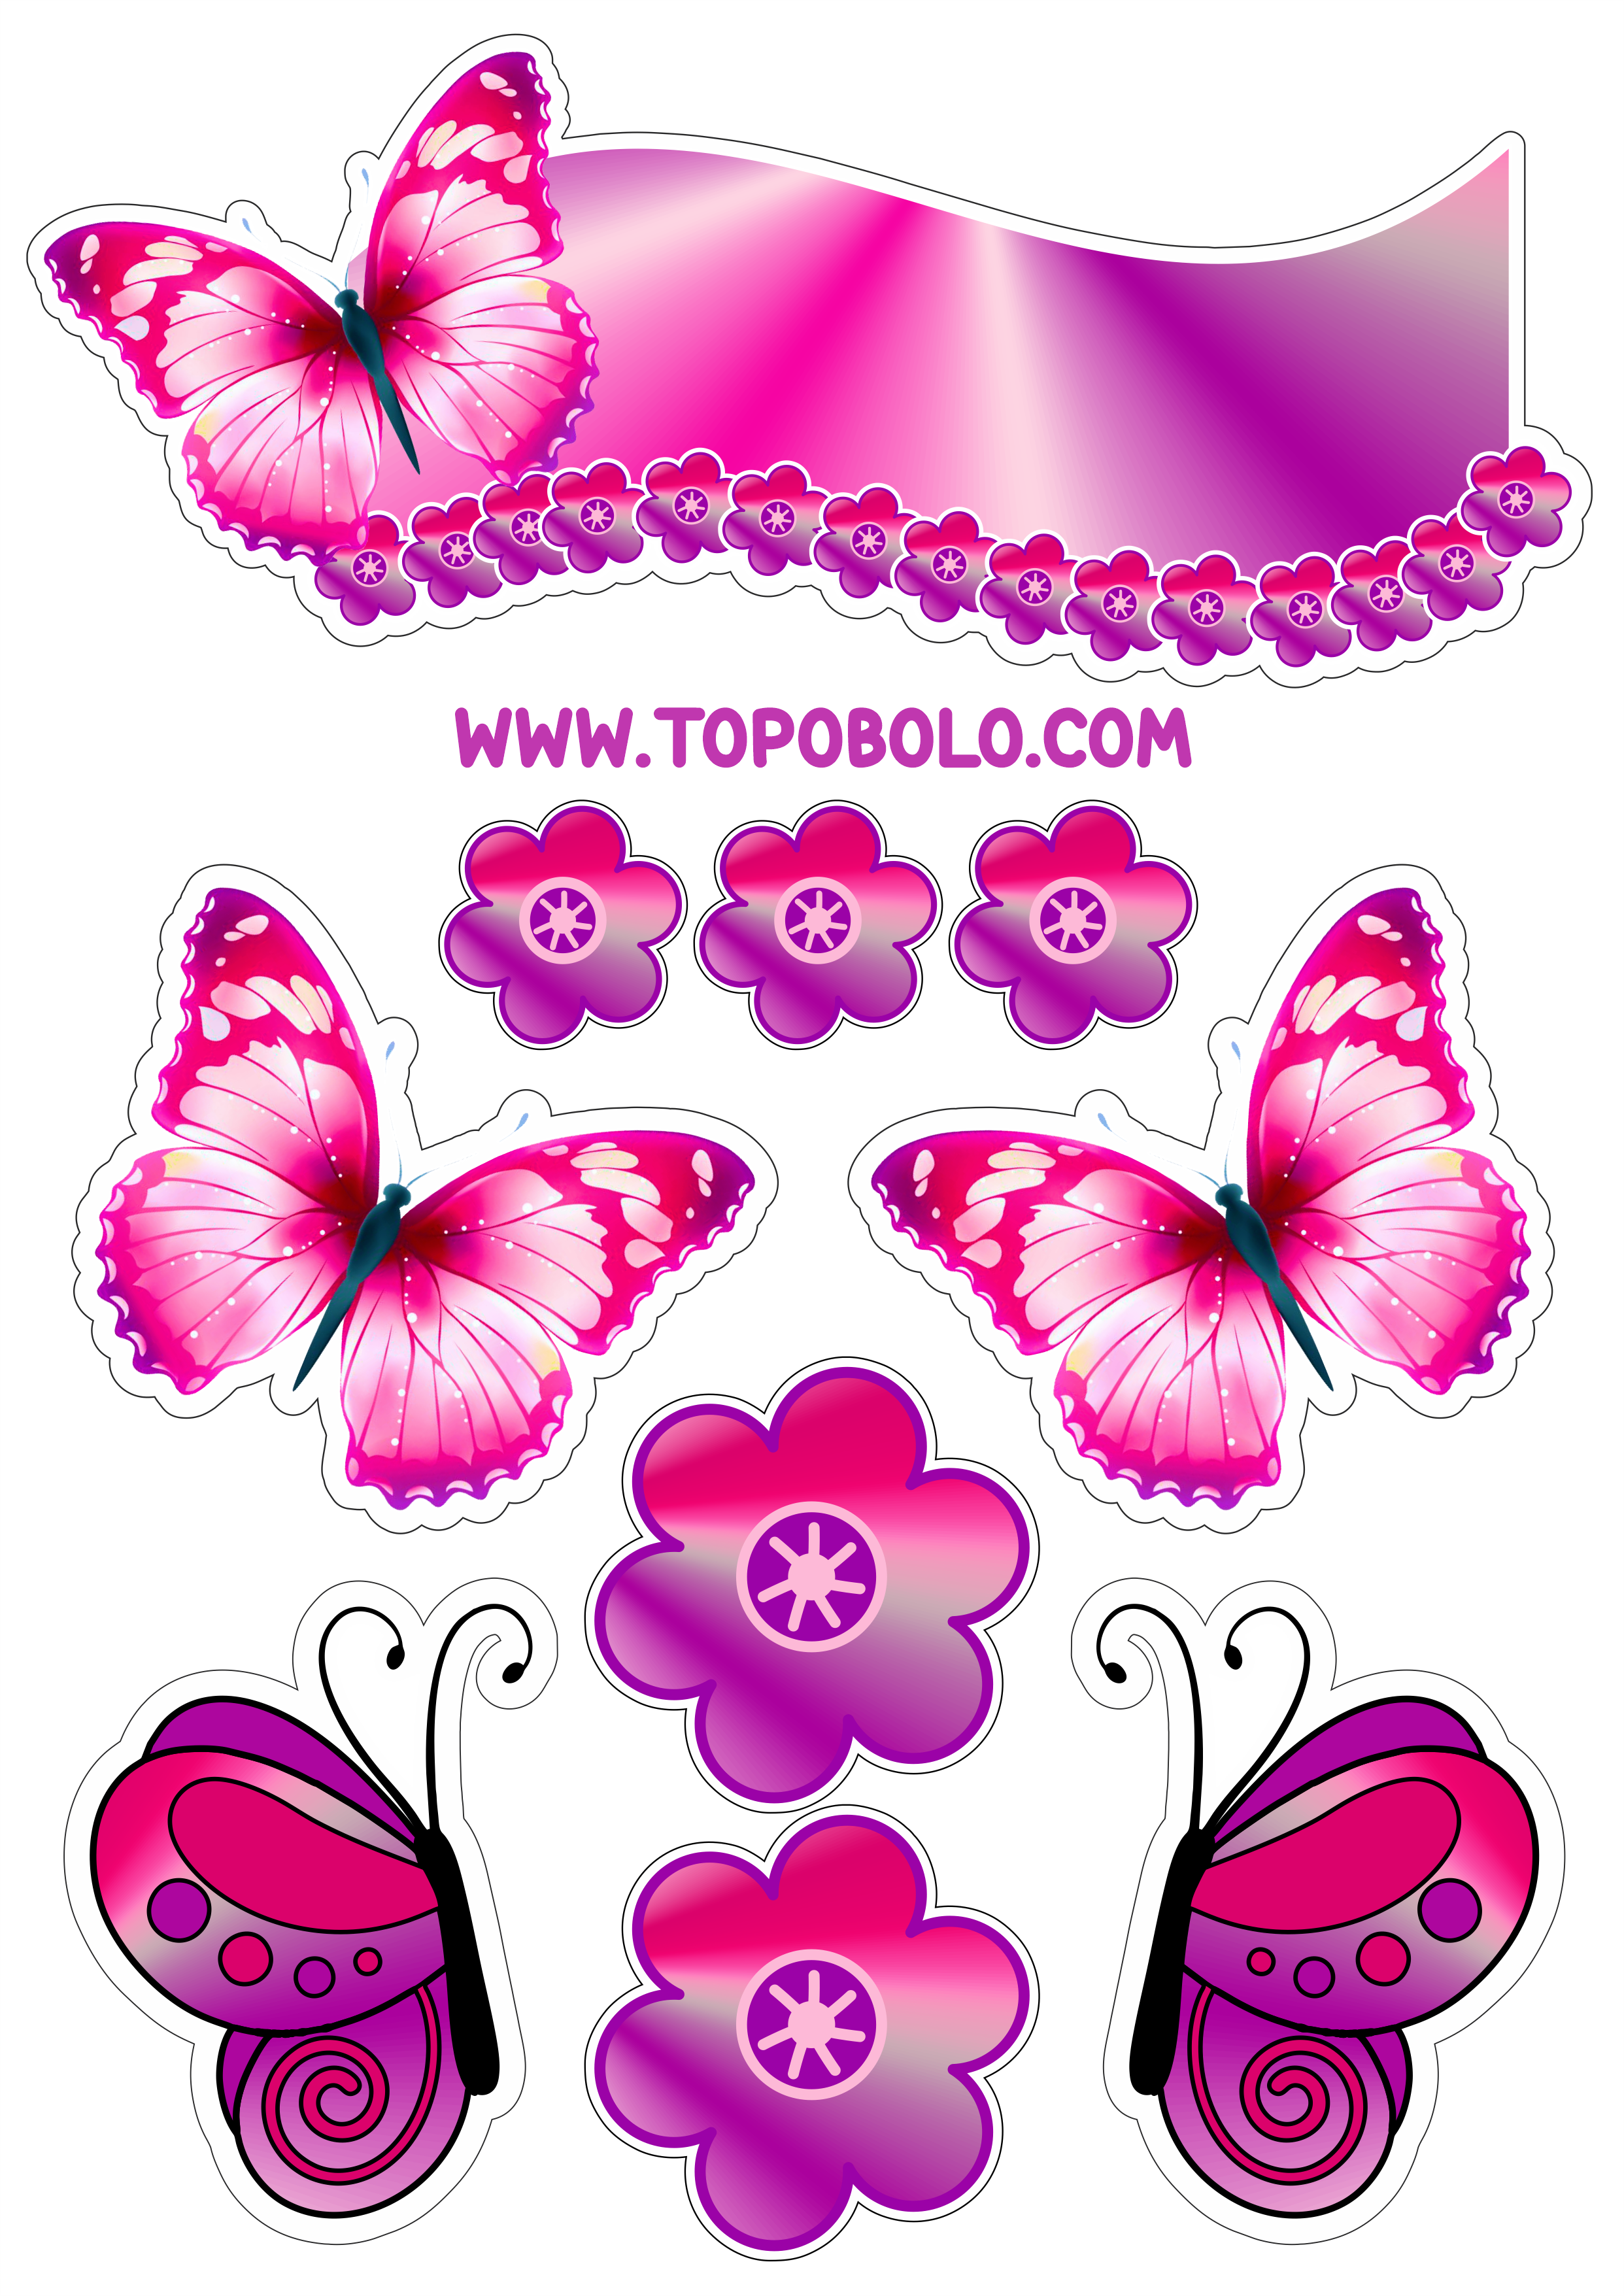 Topo de bolo para baixar borboletas e flores coloridas decoração de aniversário brilhante artes gráficas png